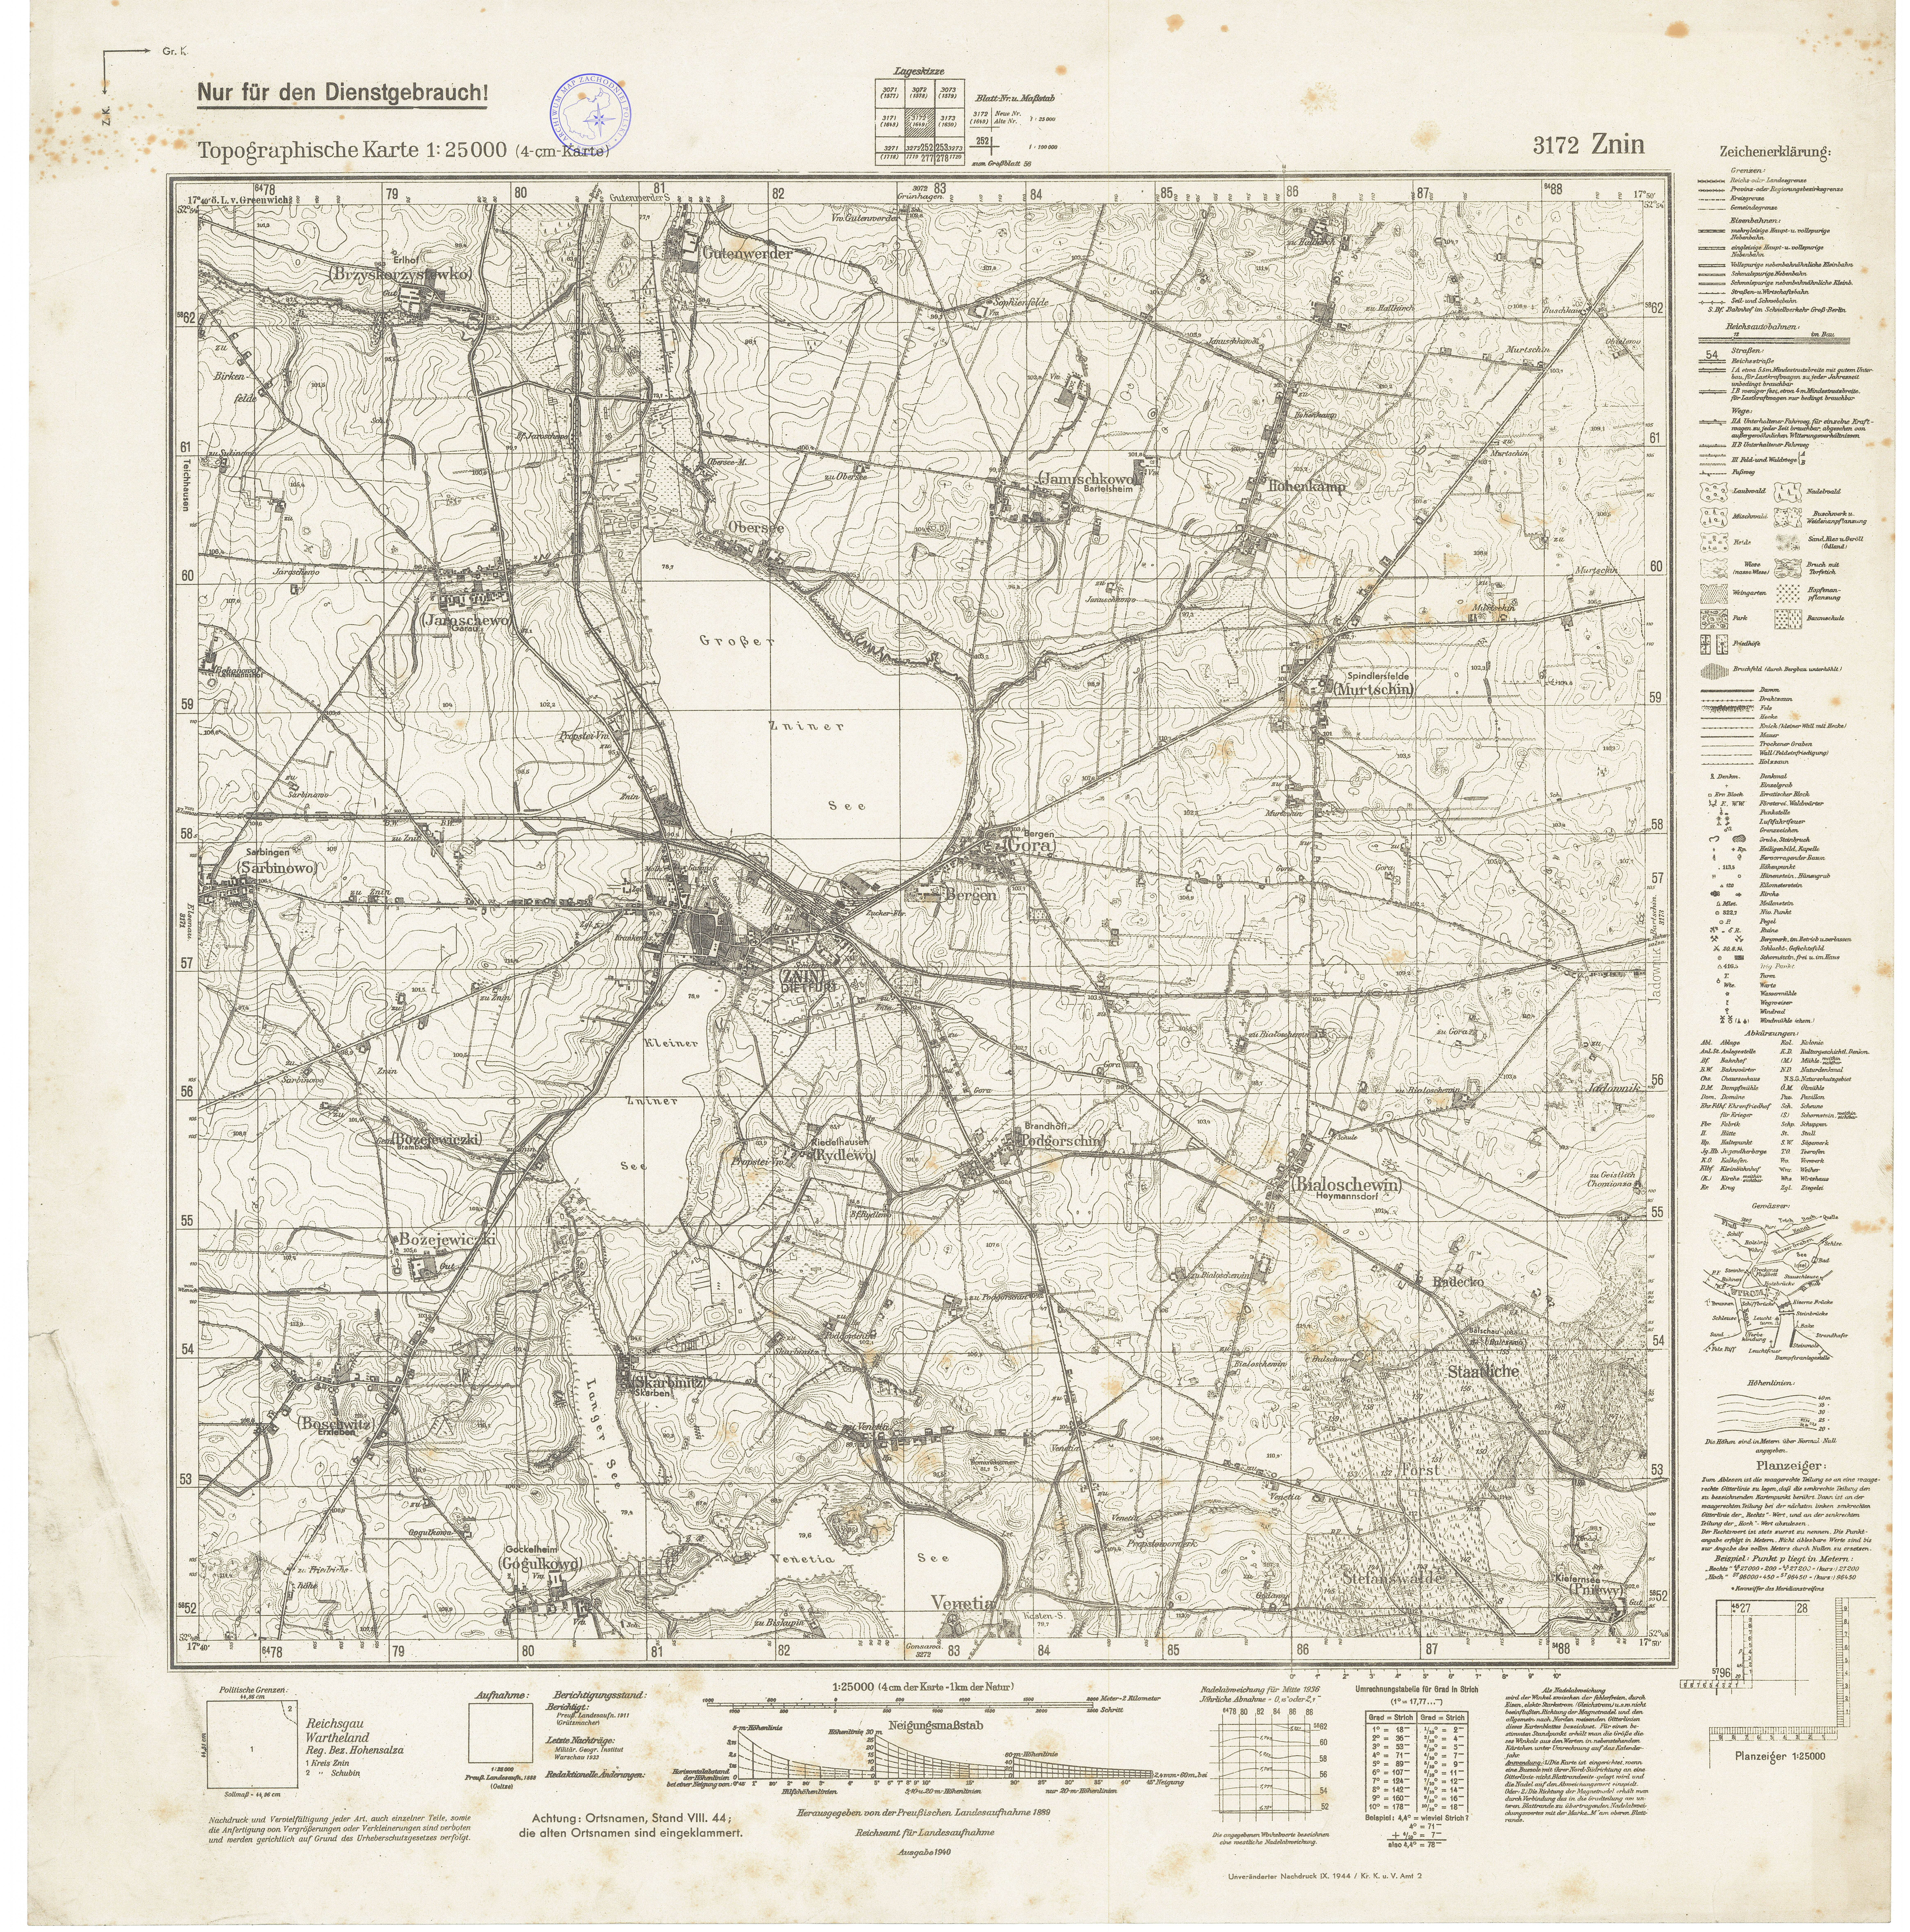 stare mapy sztabowe_różne - 3172_Znin_1944.jpg